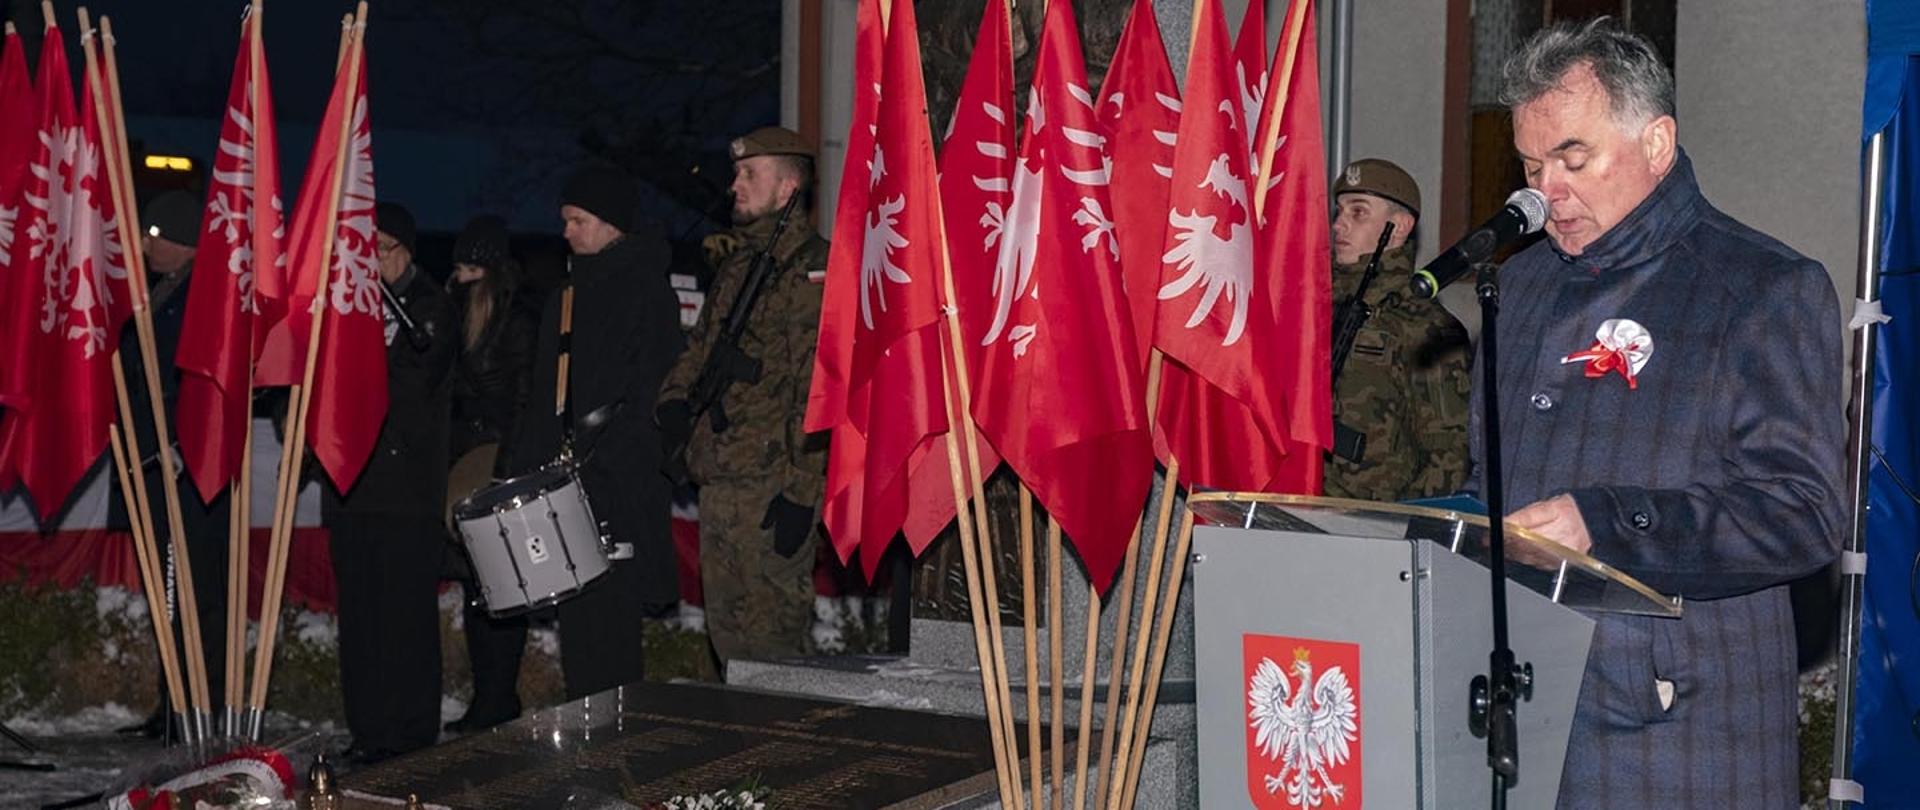 burmistrz Miasta i Gminy Margonin przemawiający z mównicy, w tle flagi Powstania Wielkopolskiego, za nimi postacie w mundurach